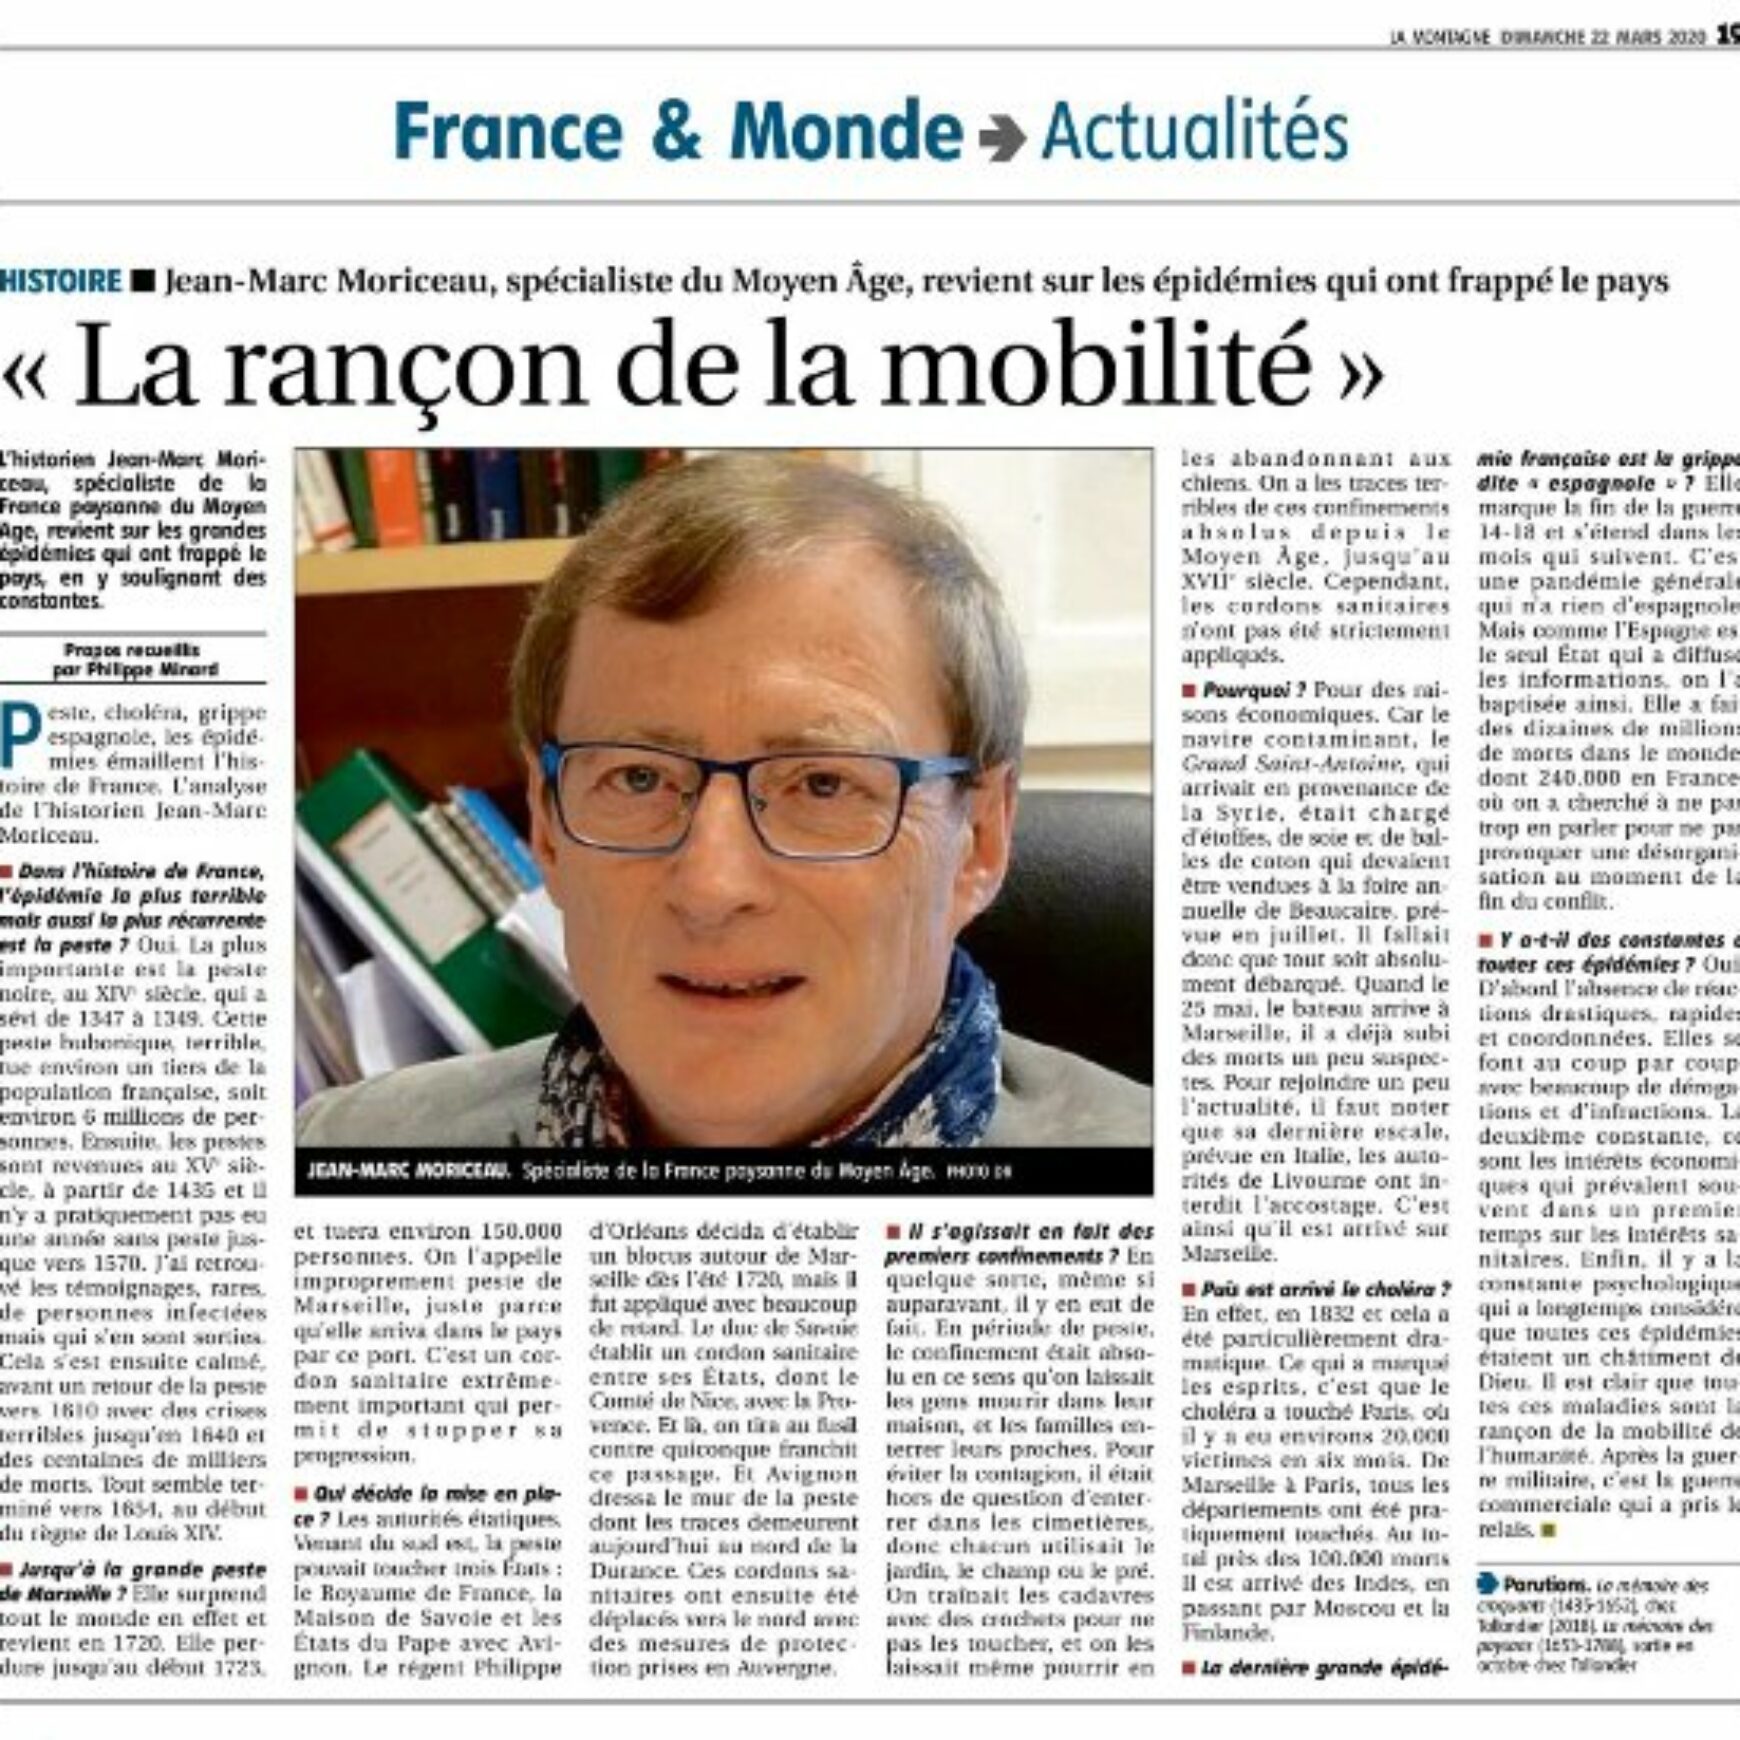 Interview de notre ami Jean-Marc Moriceau – La Montage 22 mars 2020